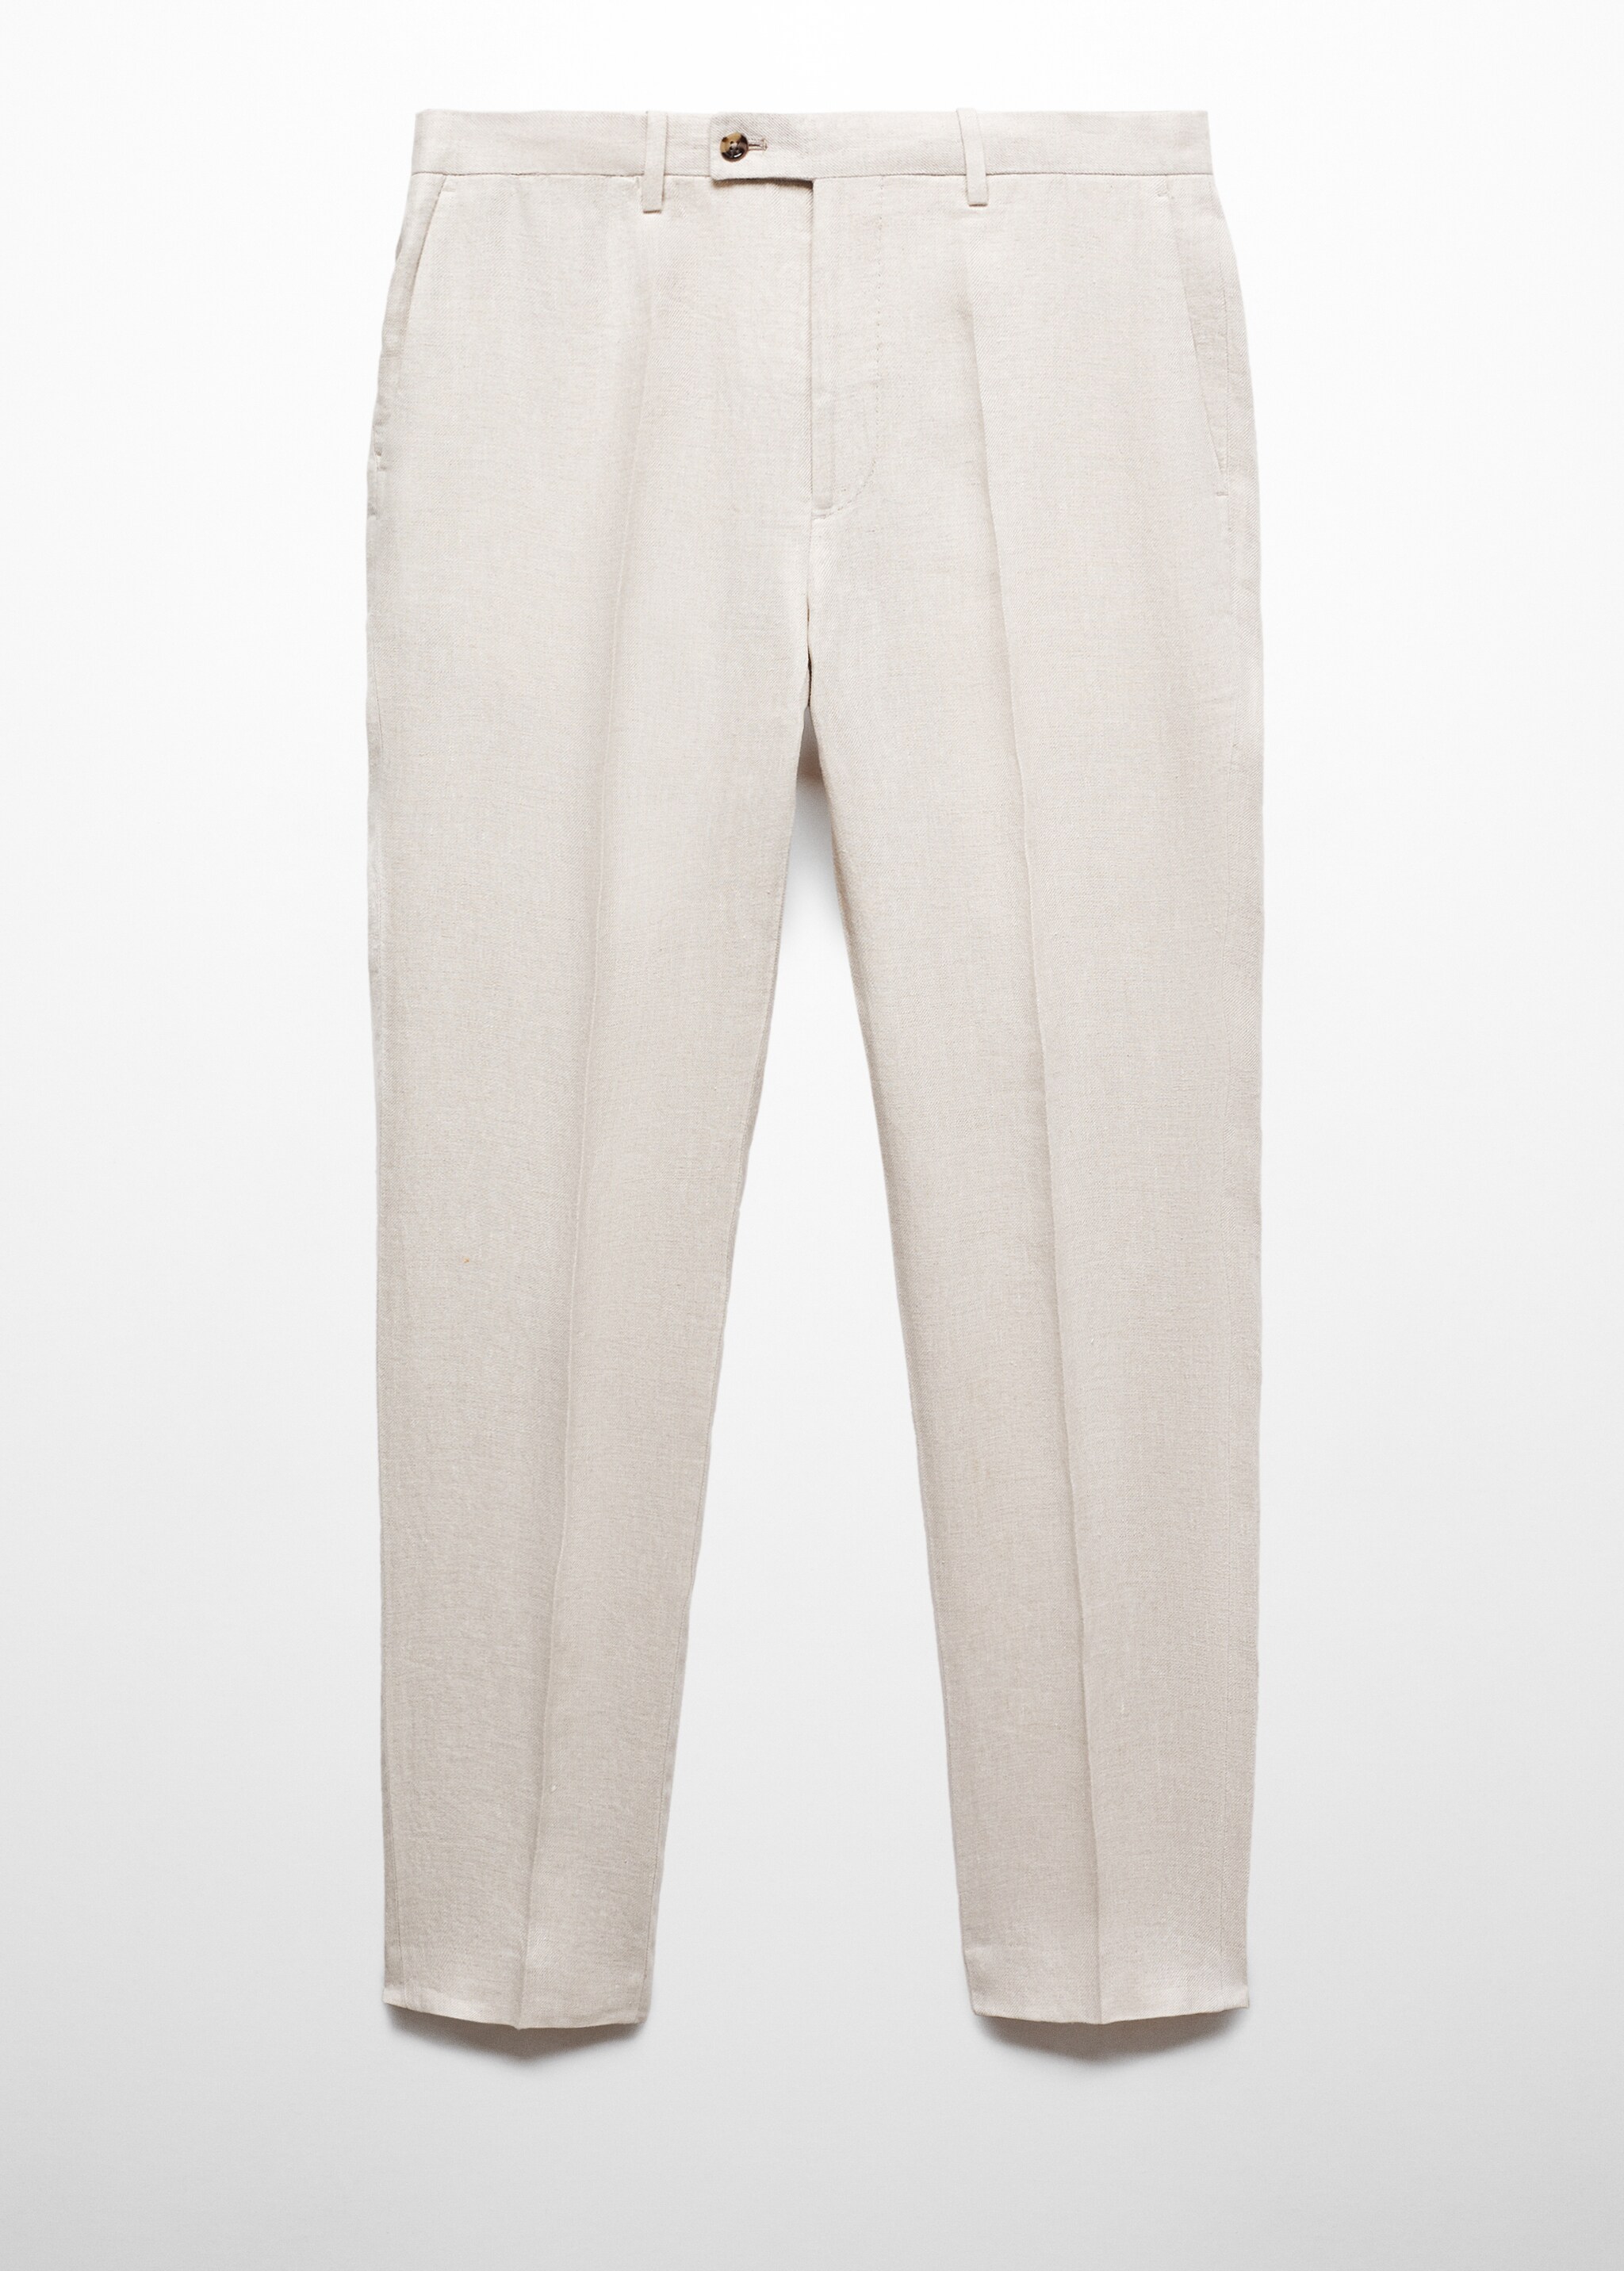 Pantalón traje slim fit 100% lino - Artículo sin modelo